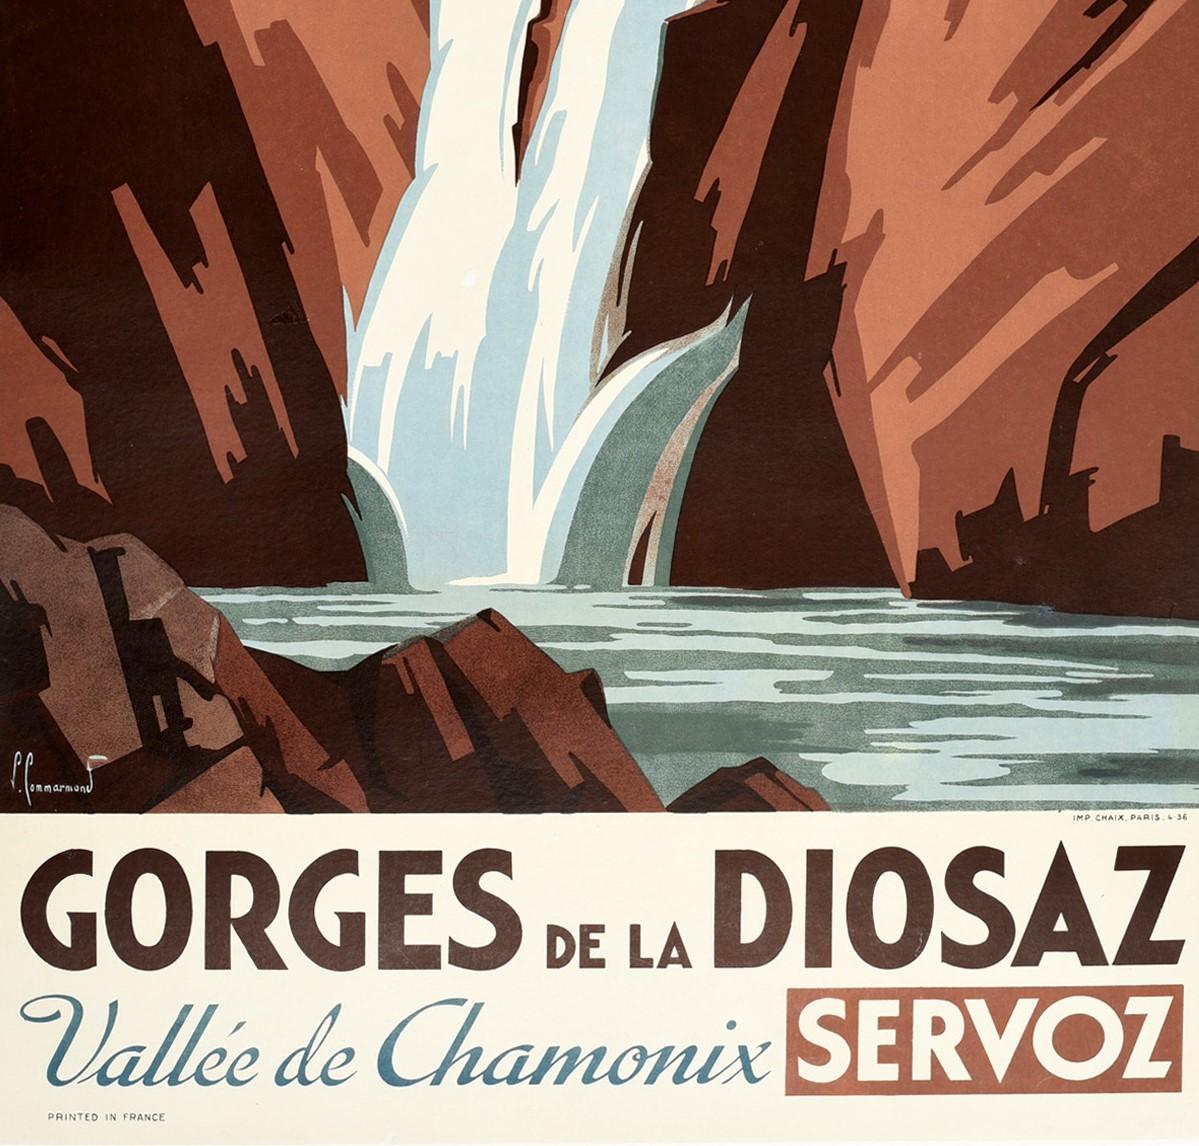 Original PLM Paris Lyon Mediterranee Eisenbahnreiseplakat für die Gorges de la Diosaz Vallee de Chamonix Servox mit einer atemberaubenden Szene der dramatischen engen Talschlucht mit Wasser, das die Felsen hinunterstürzt, und Touristen, die entlang